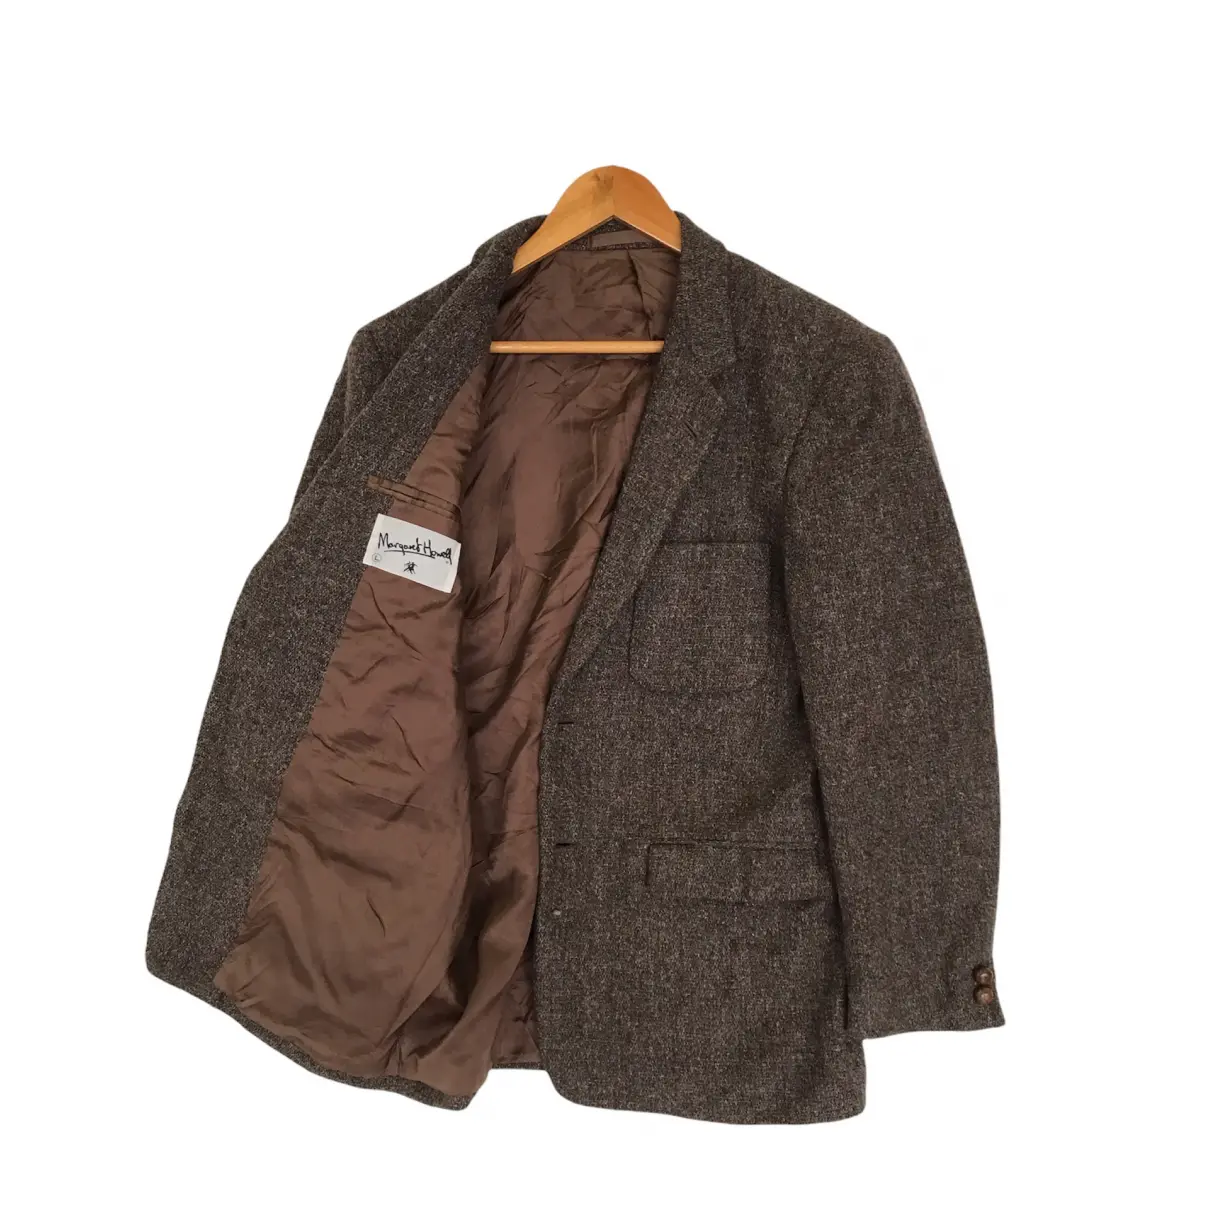 Buy Margaret Howell Wool coat online - Vintage